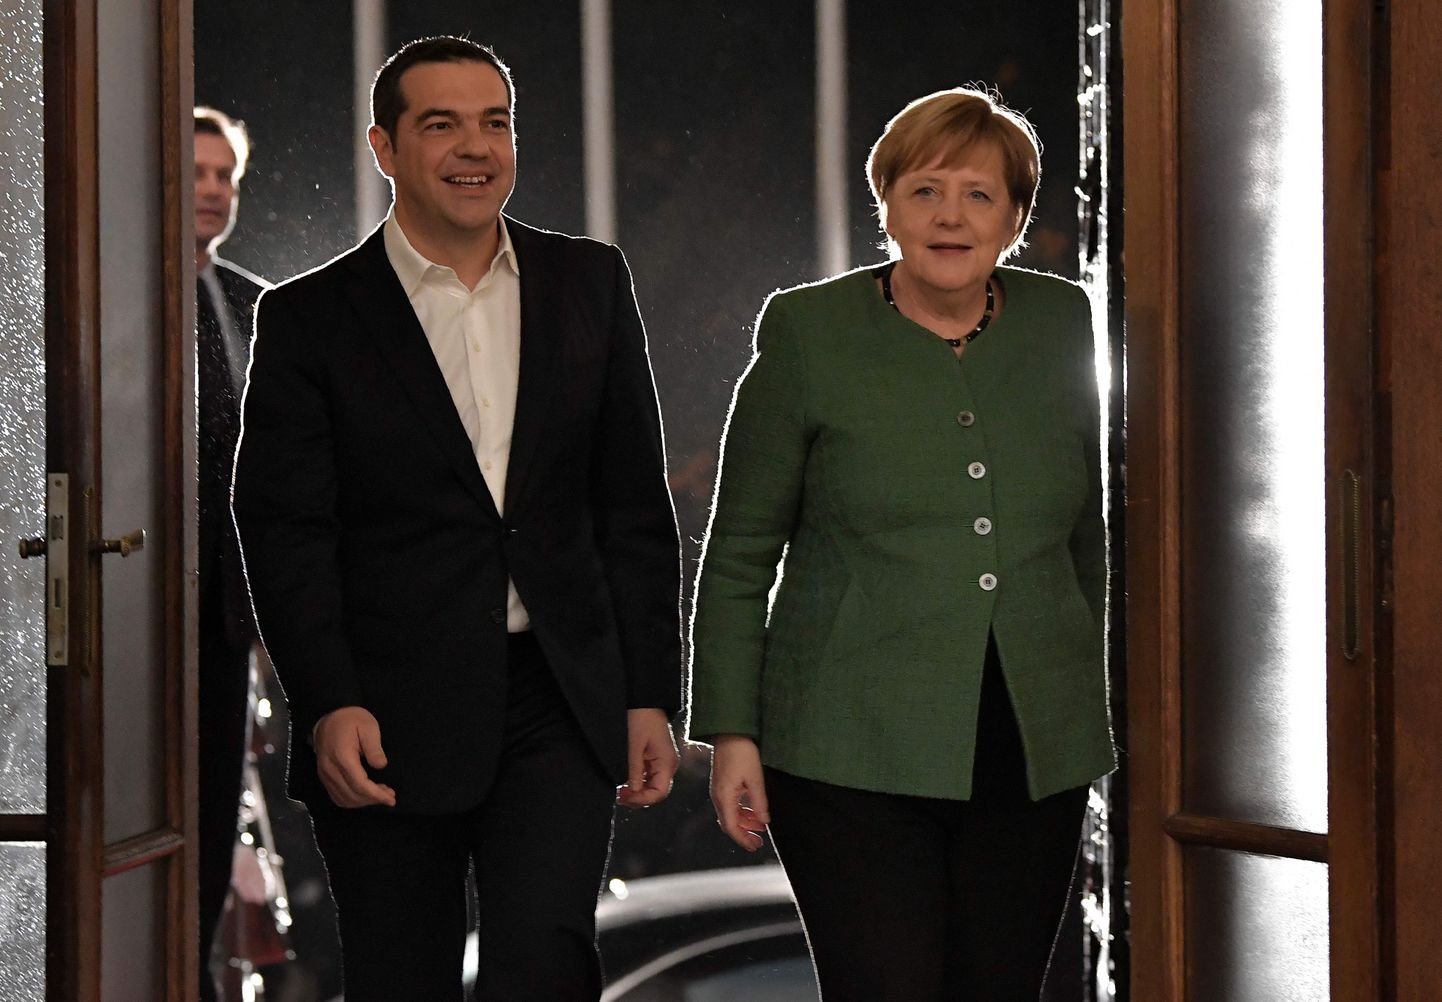 Kreeka peaminister Aléxis Tsípras ja Saksa kantsler Angela Merkel 10. jaanuaril Ateenas.